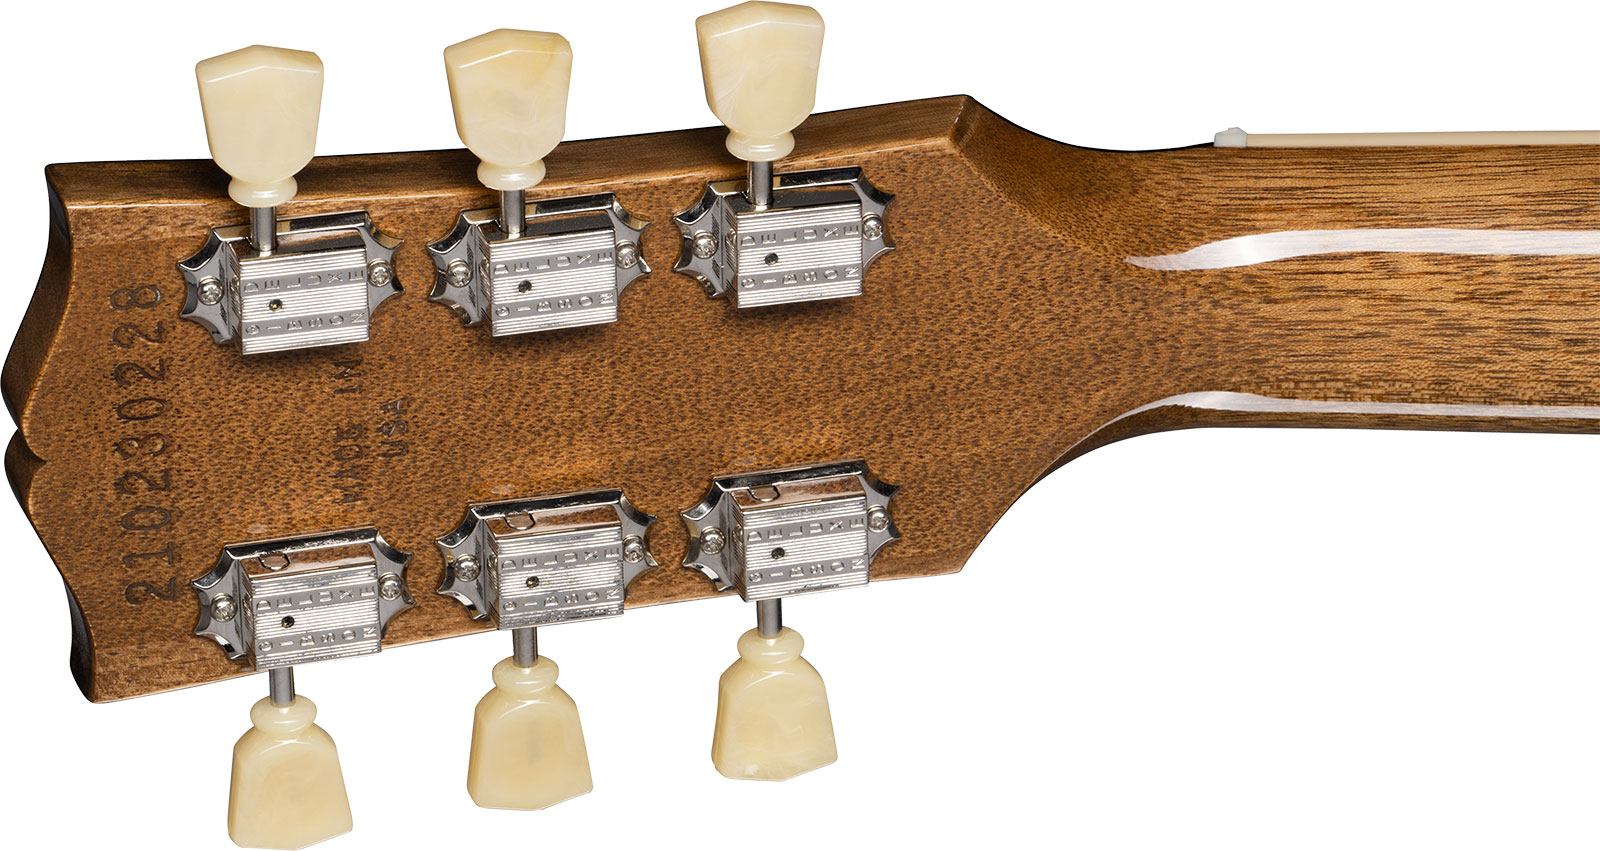 Gibson Les Paul Standard 50s Plain Top 2h Ht Rw - Classic White - Guitarra eléctrica de corte único. - Variation 4